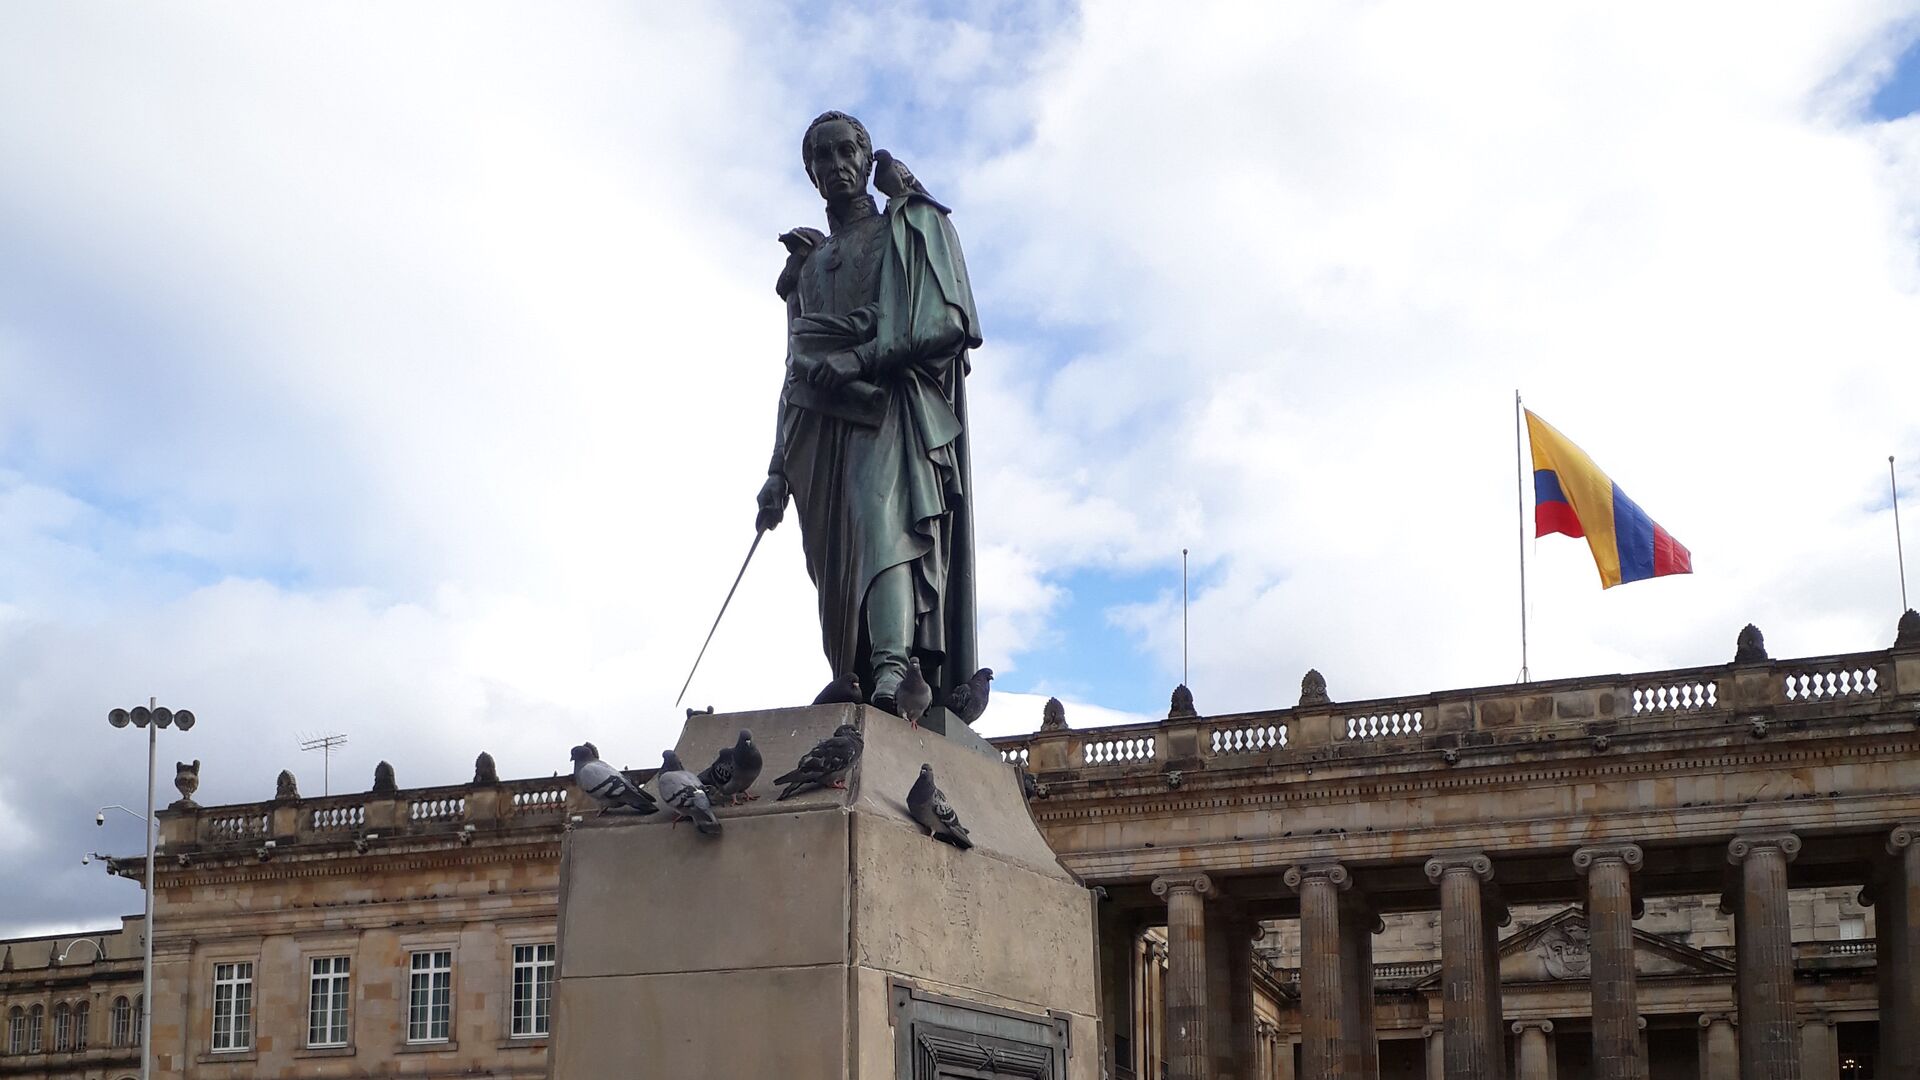 Памятник Симону Боливару на центральной площади Боготы, Колумбия - РИА Новости, 1920, 23.12.2020